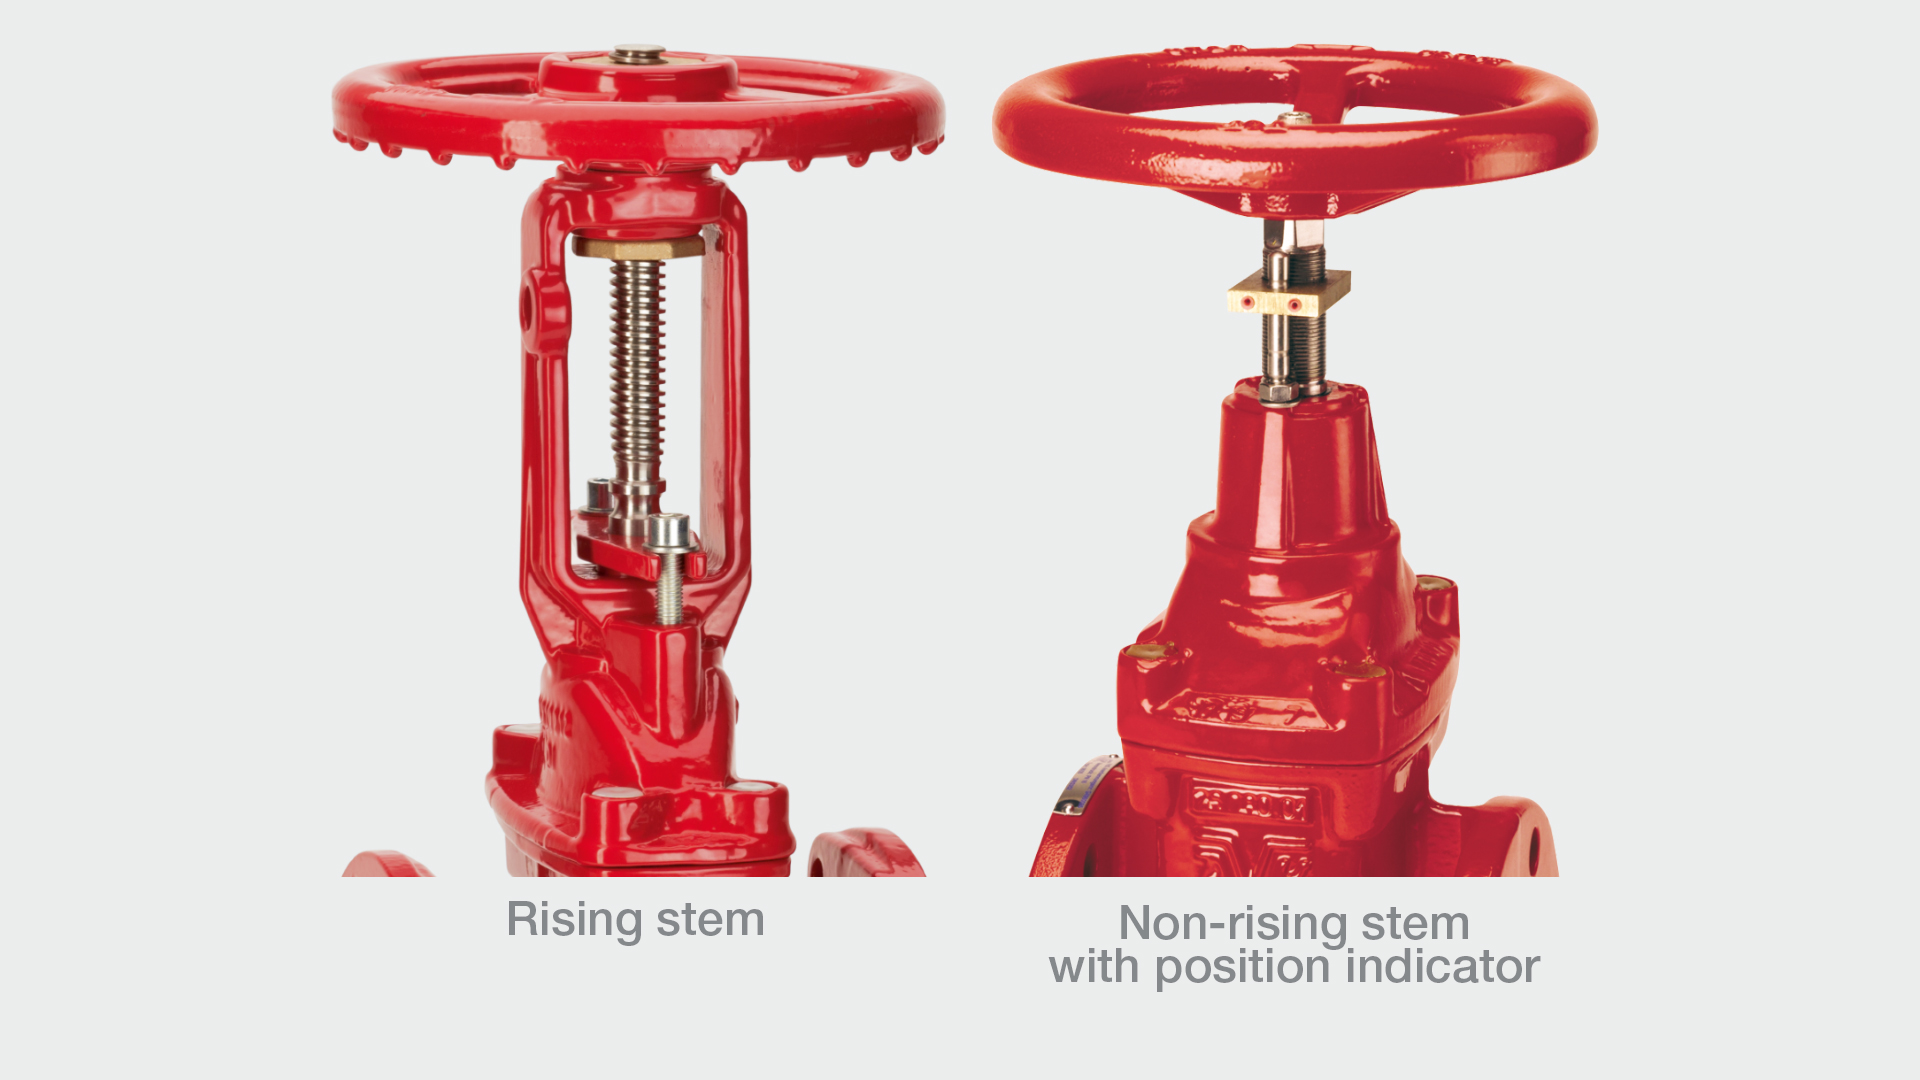 AVK gate valves with rising stem vs non-rising stem design